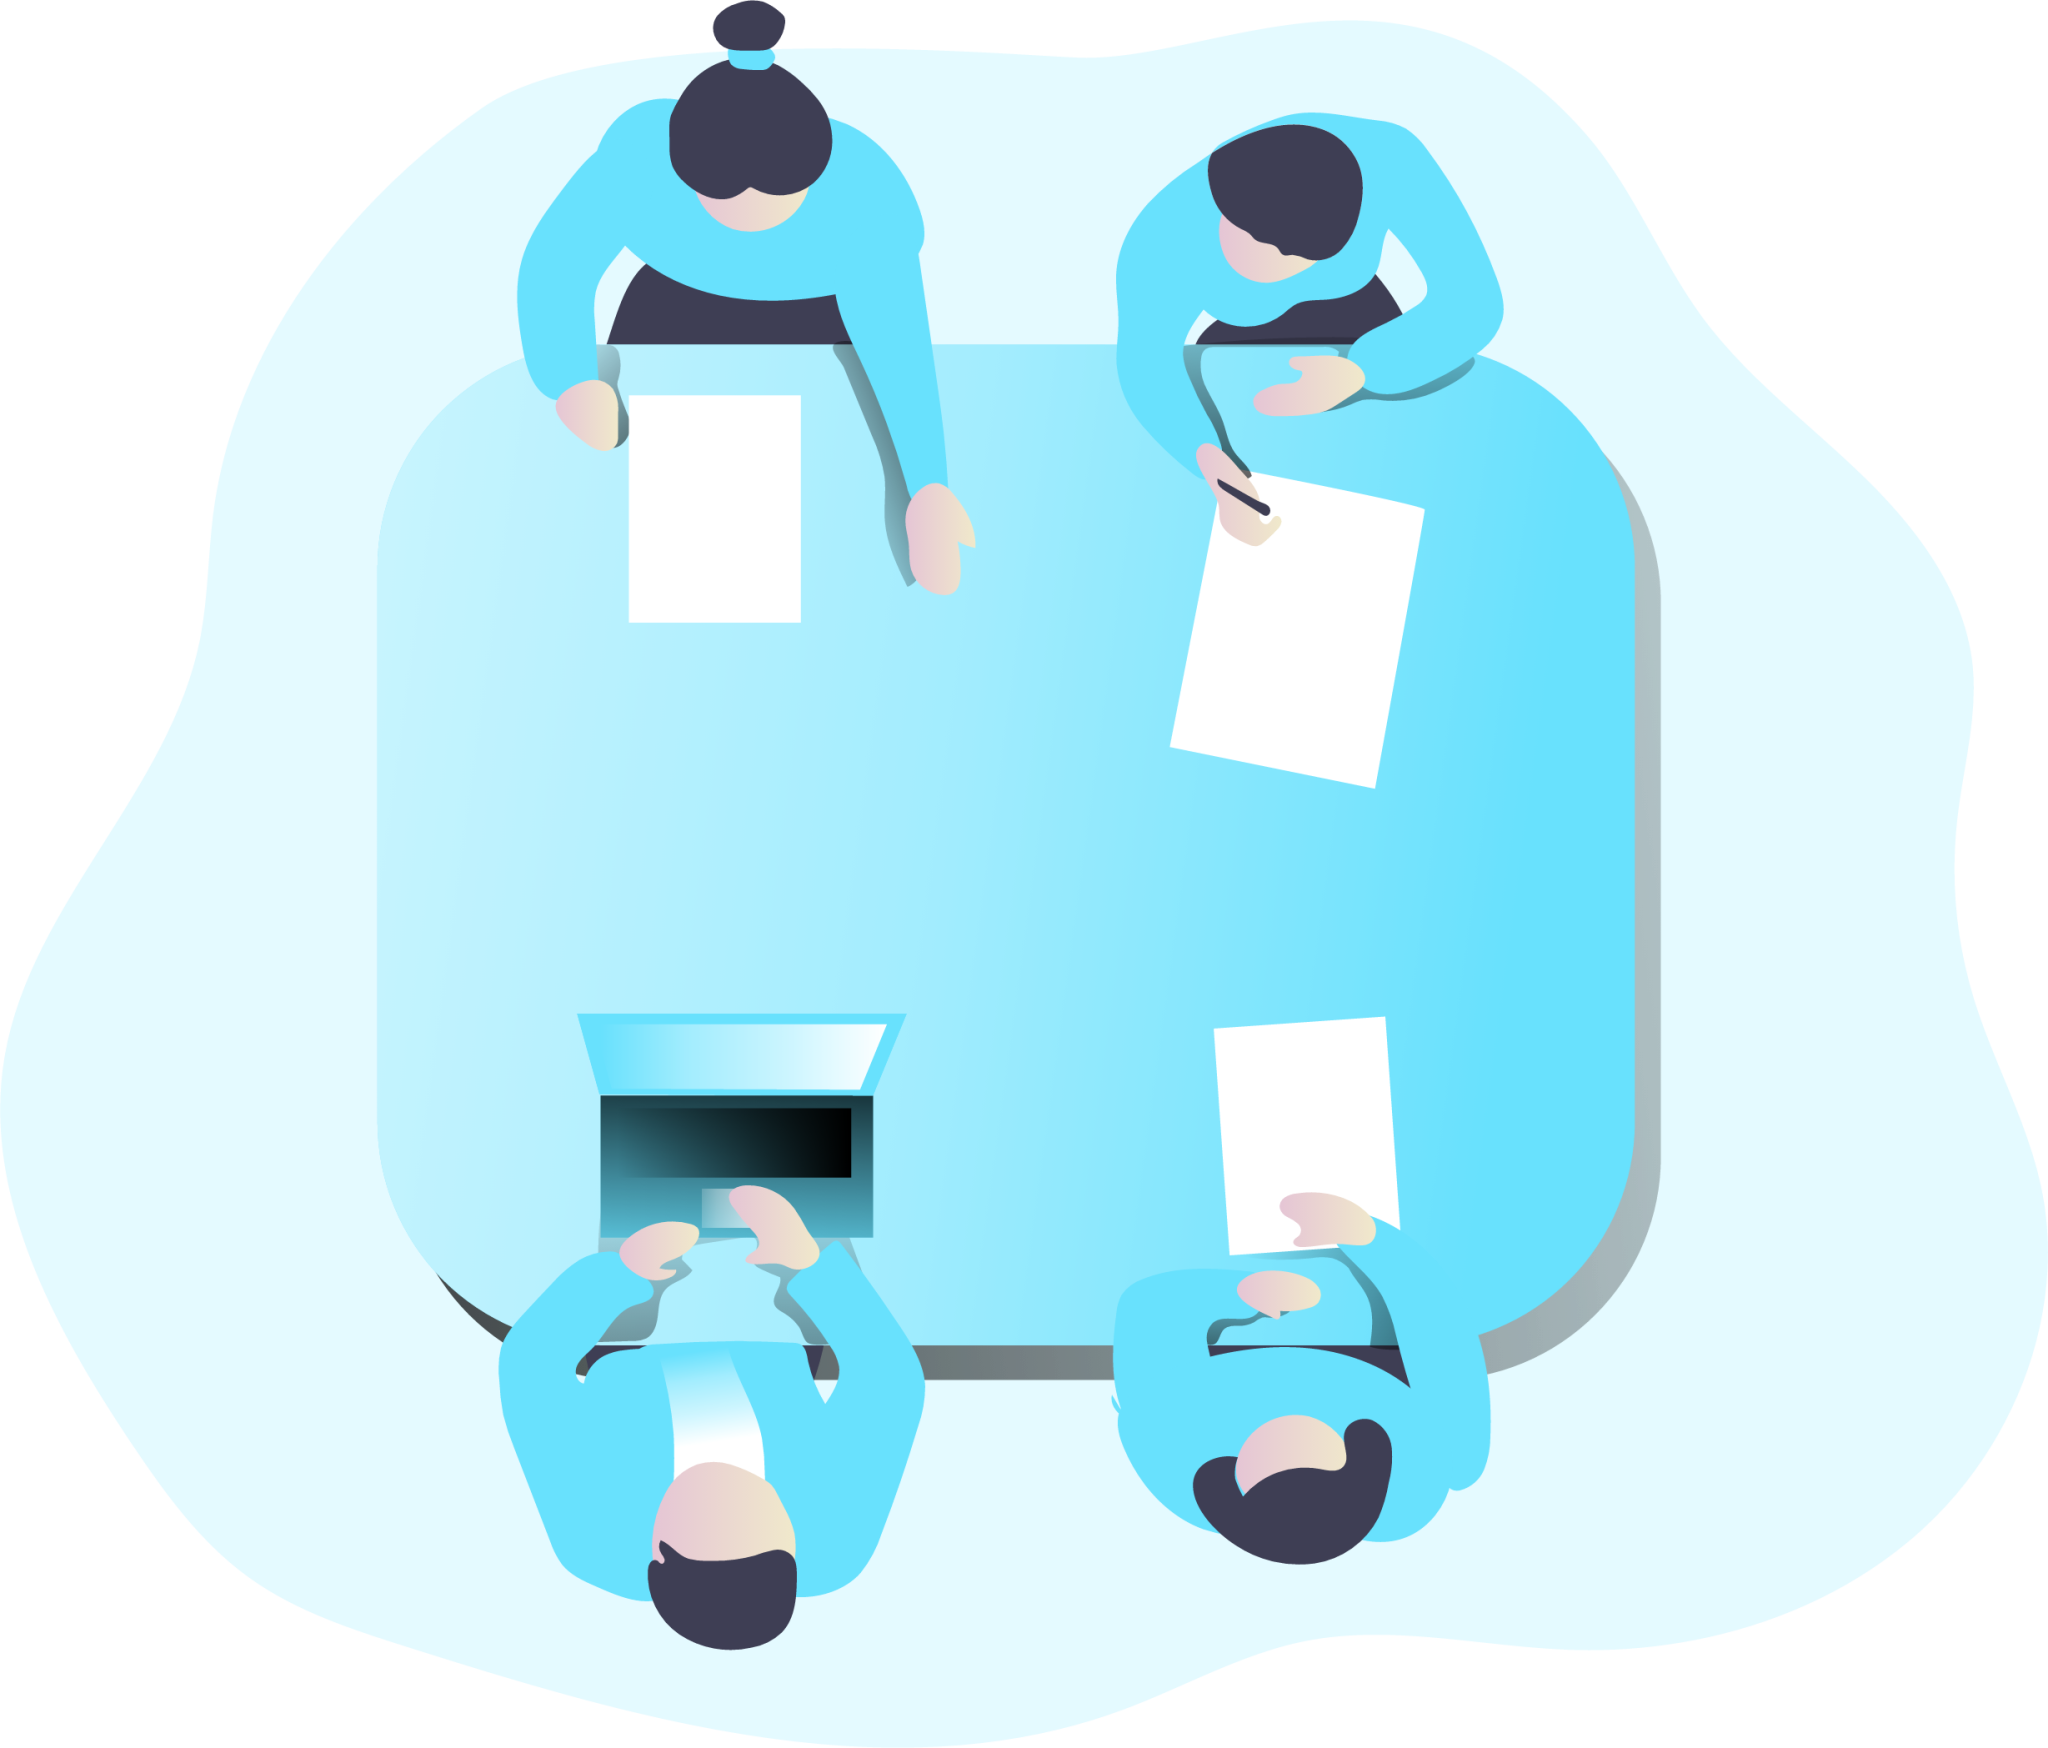 Team Meeting illustration